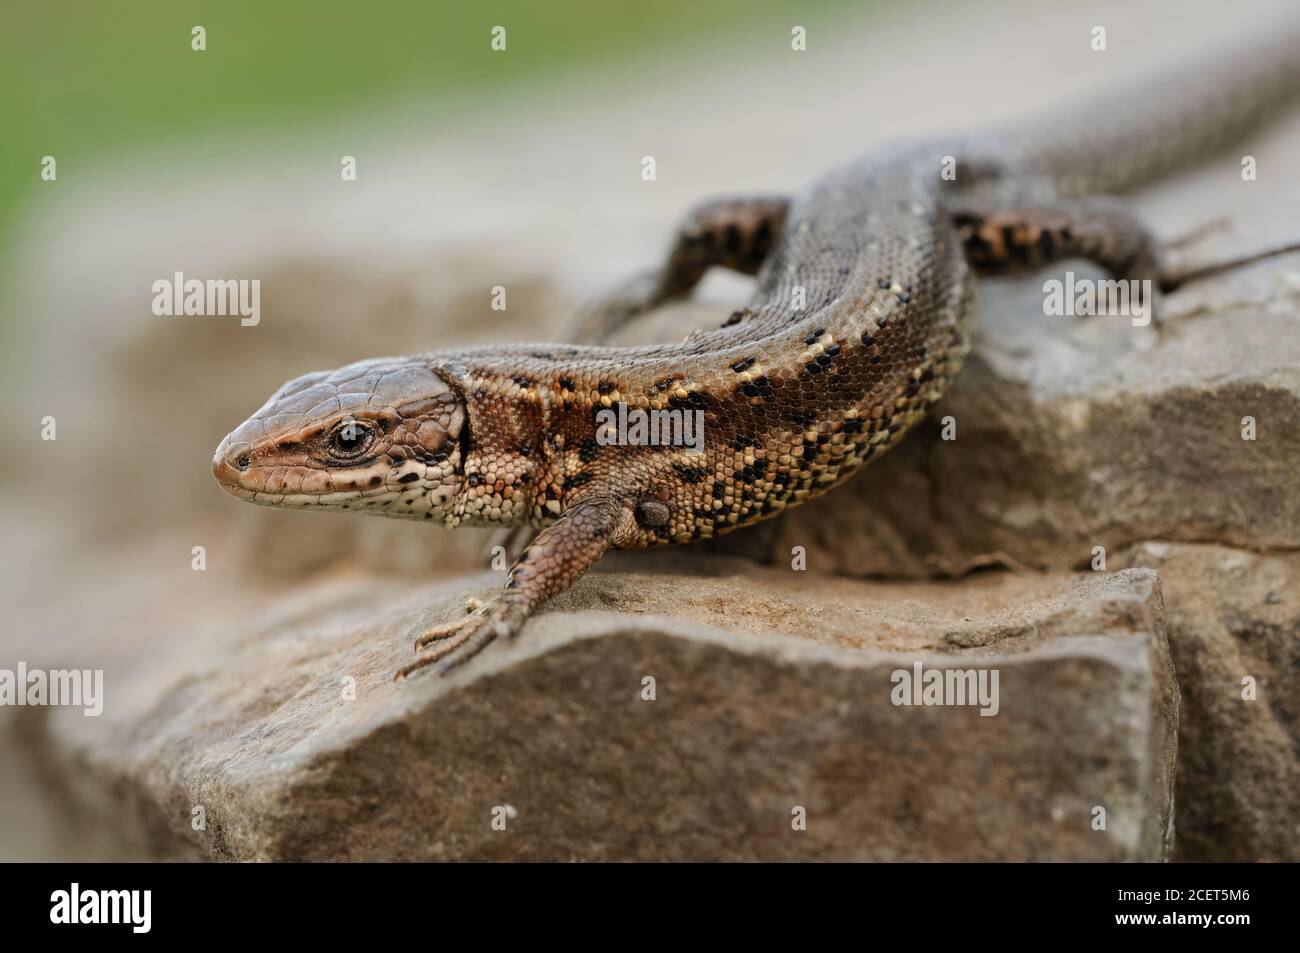 Lizard vivipare ( Zootoca vivipara ), lézard commun, rampant sur les rochers, en cours de réchauffement, tôt au printemps, belle vue détaillée, faune, Europe. Banque D'Images